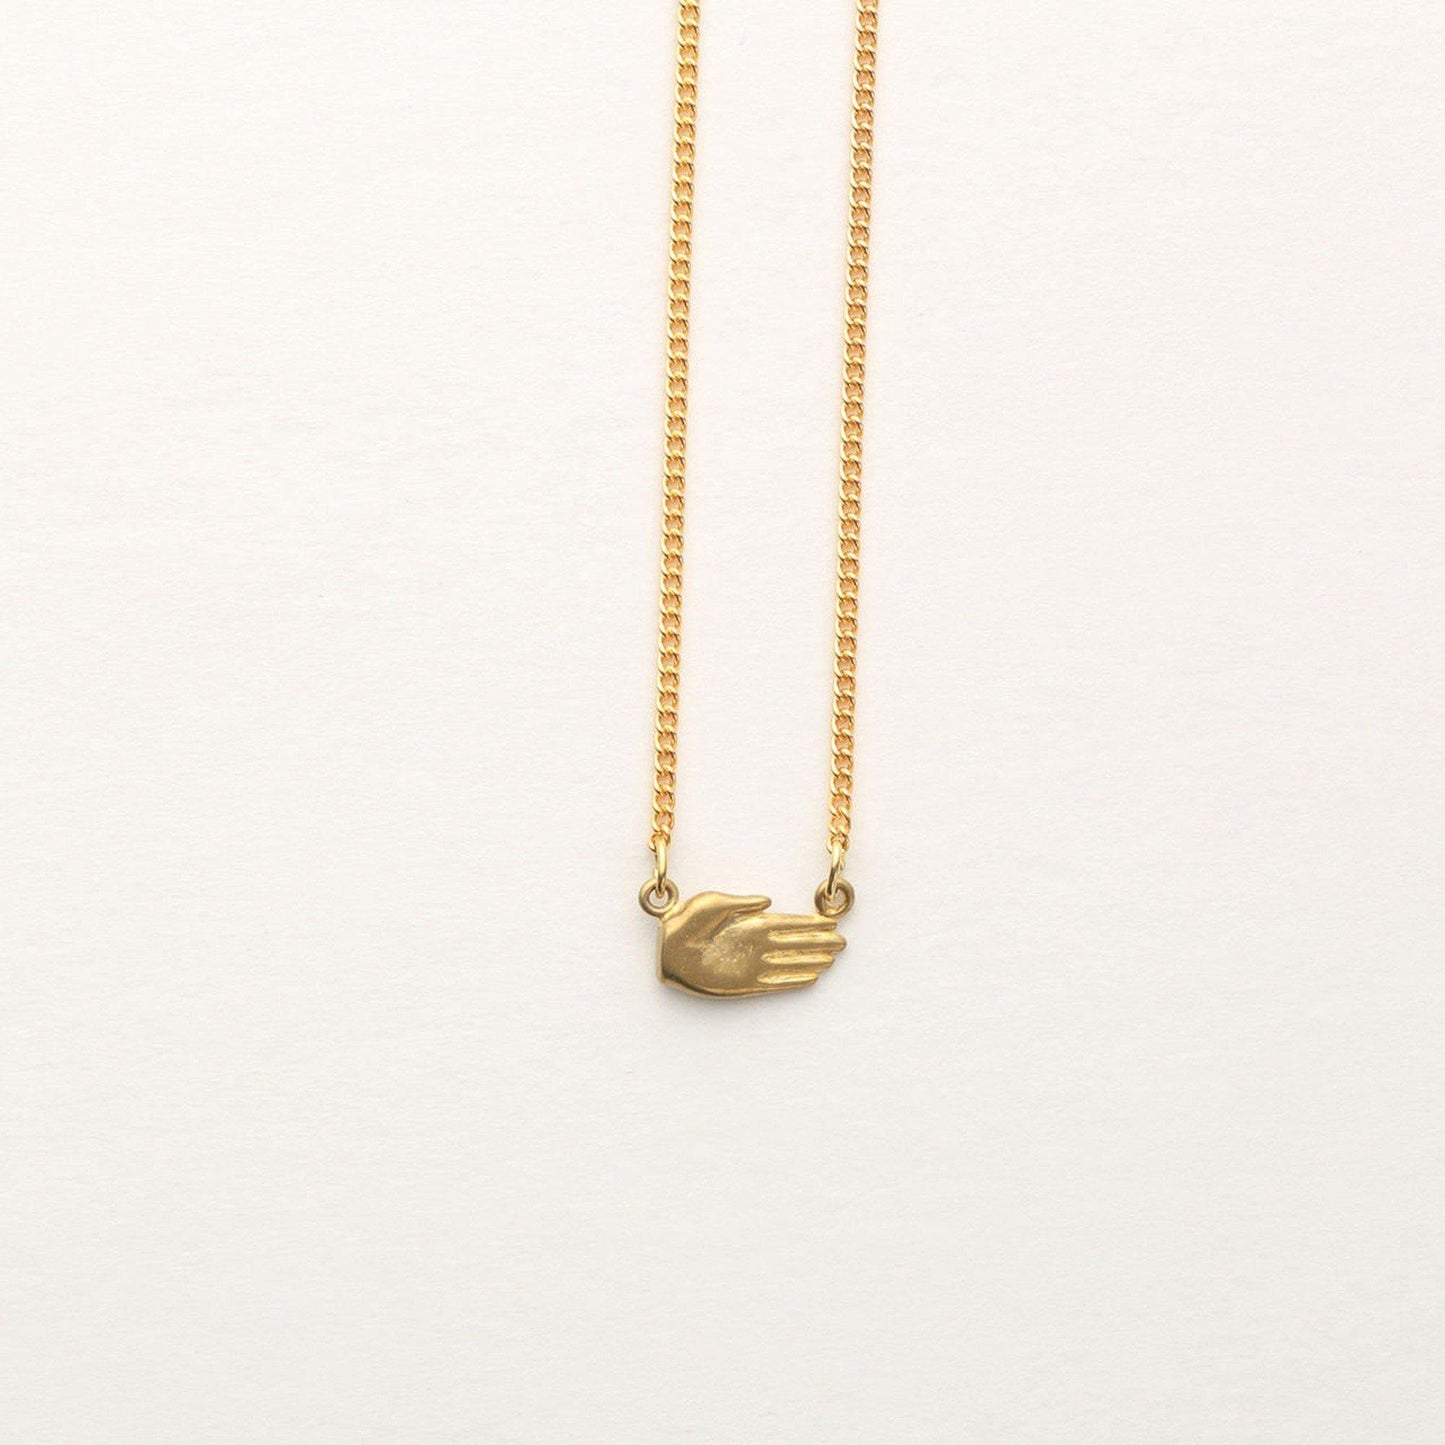 Aquvii(アクビ) | じゃんけん(グー・チョキ・パー)の手をモチーフにしたネックレス Janken necklace [aq.028] - Sopwith camel